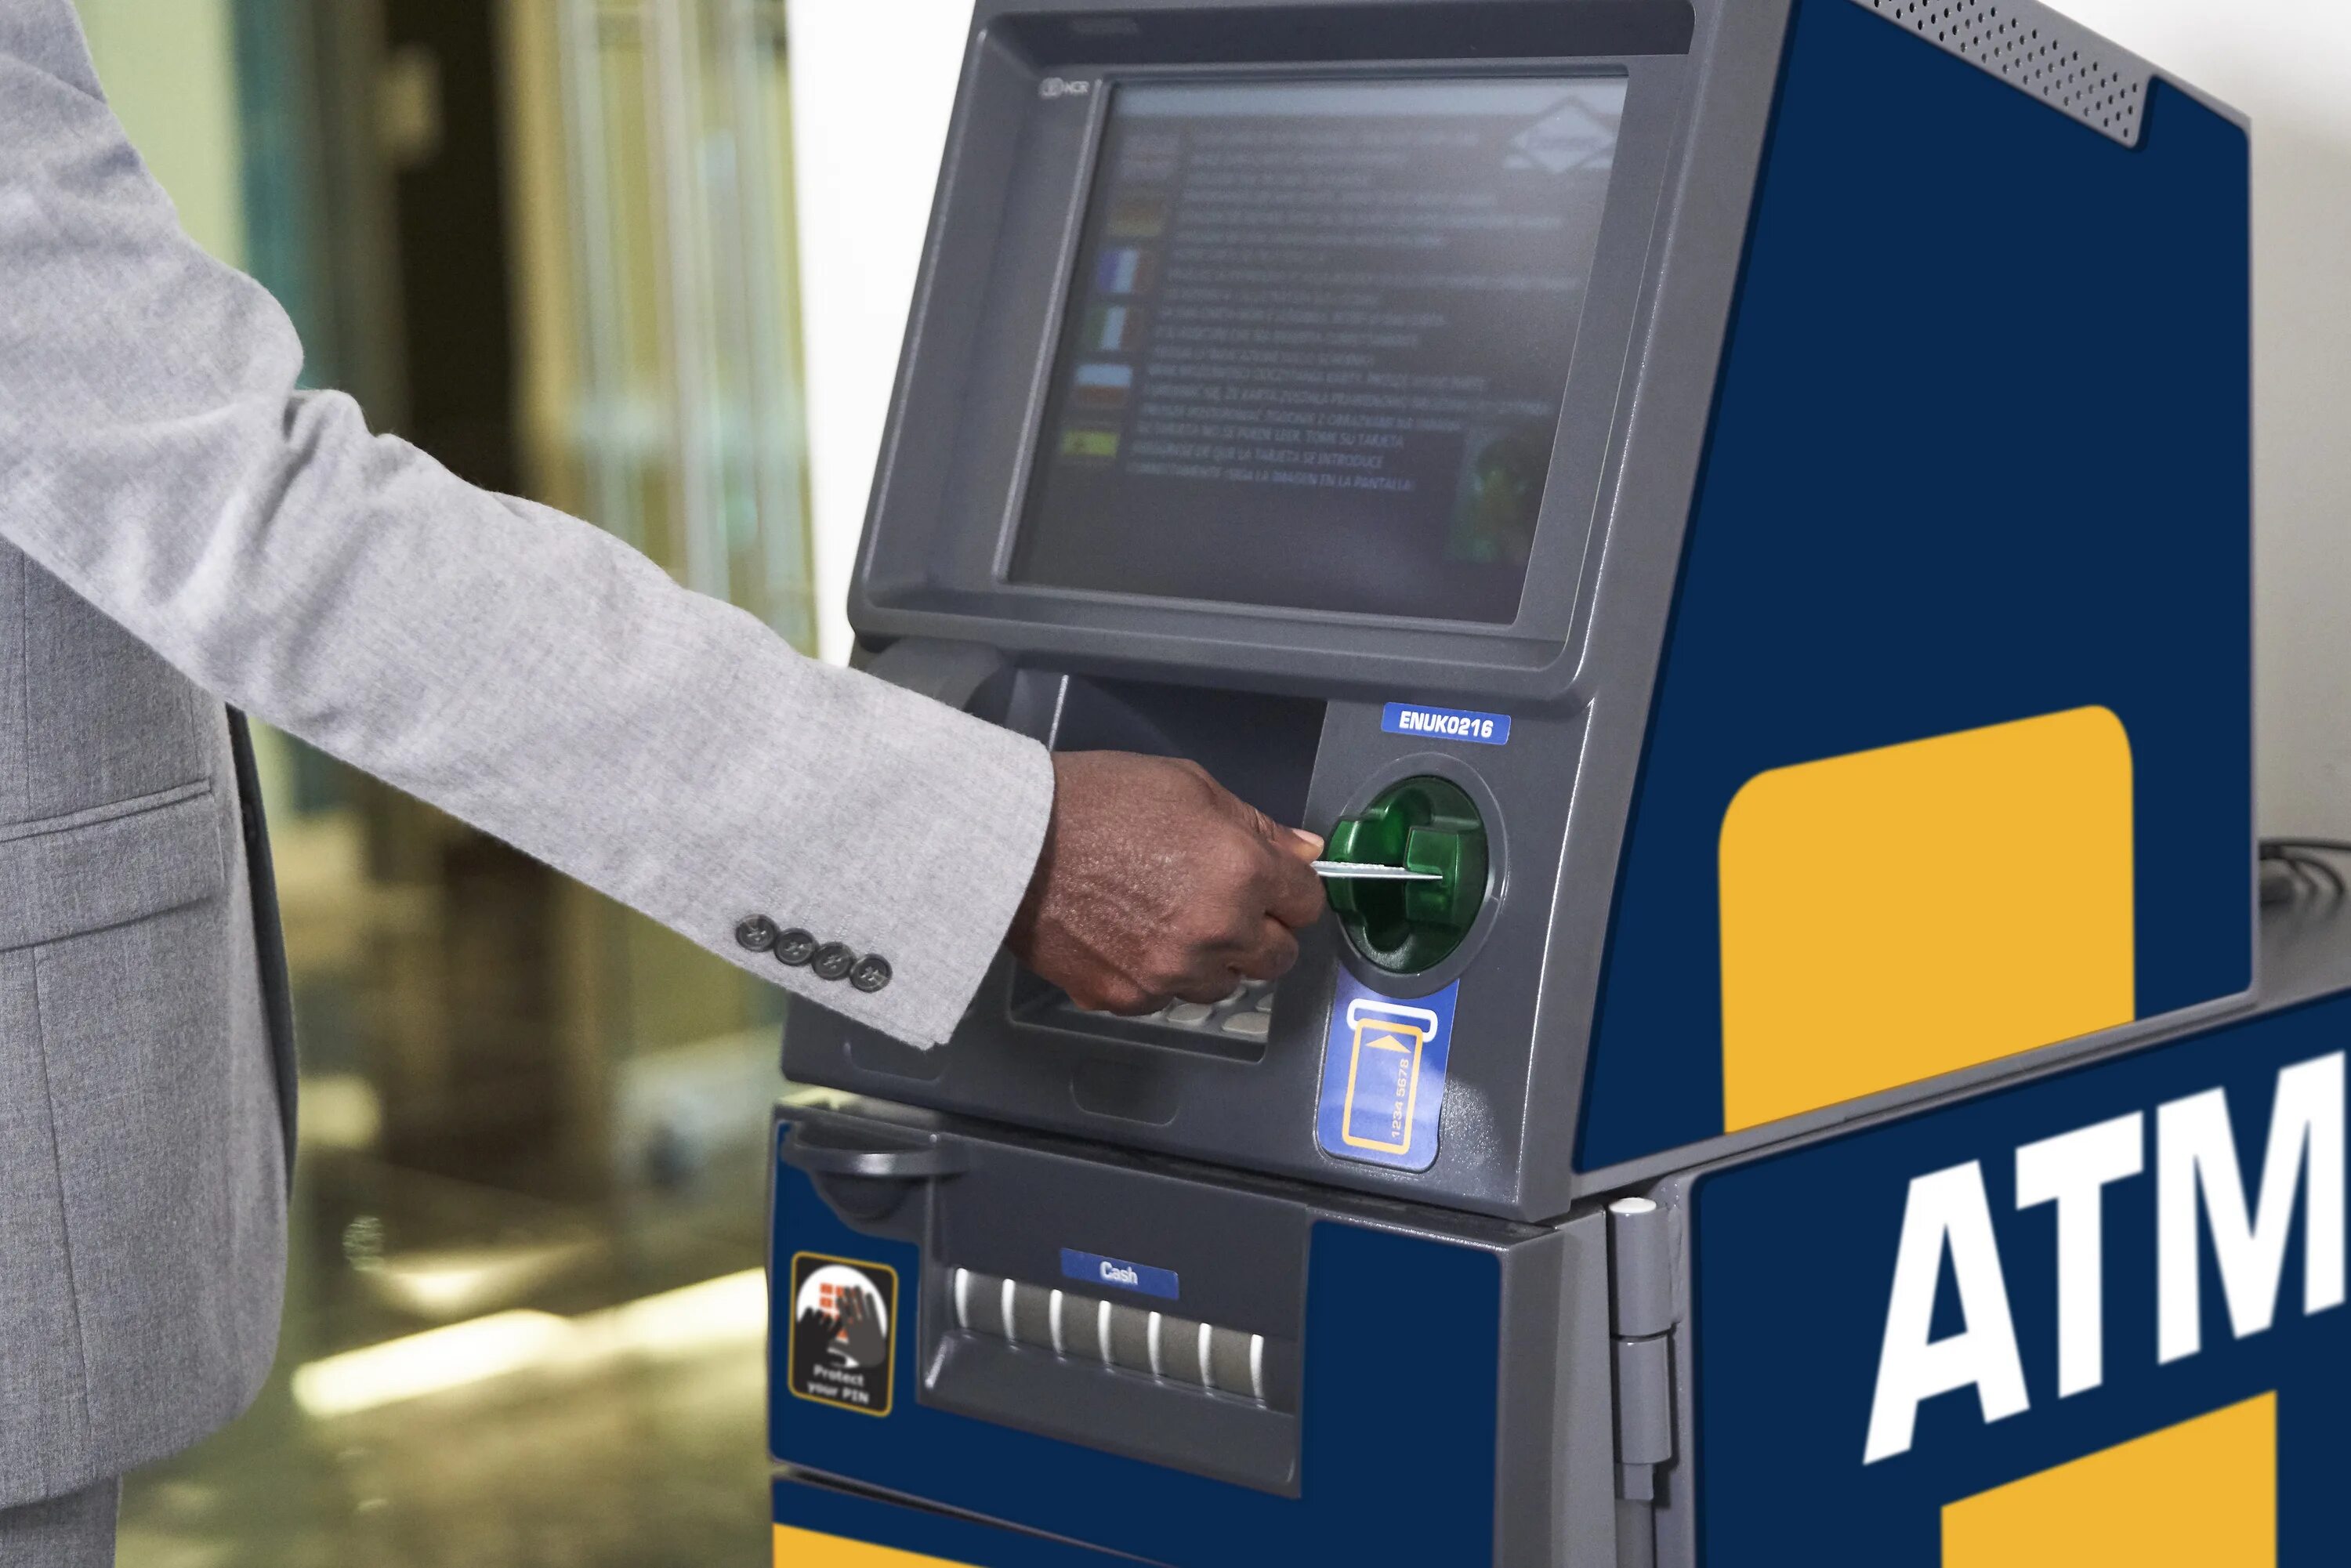 Банкомат (ATM). Cash in терминал. Банкомат в Америке. Новейший терминал ATM.